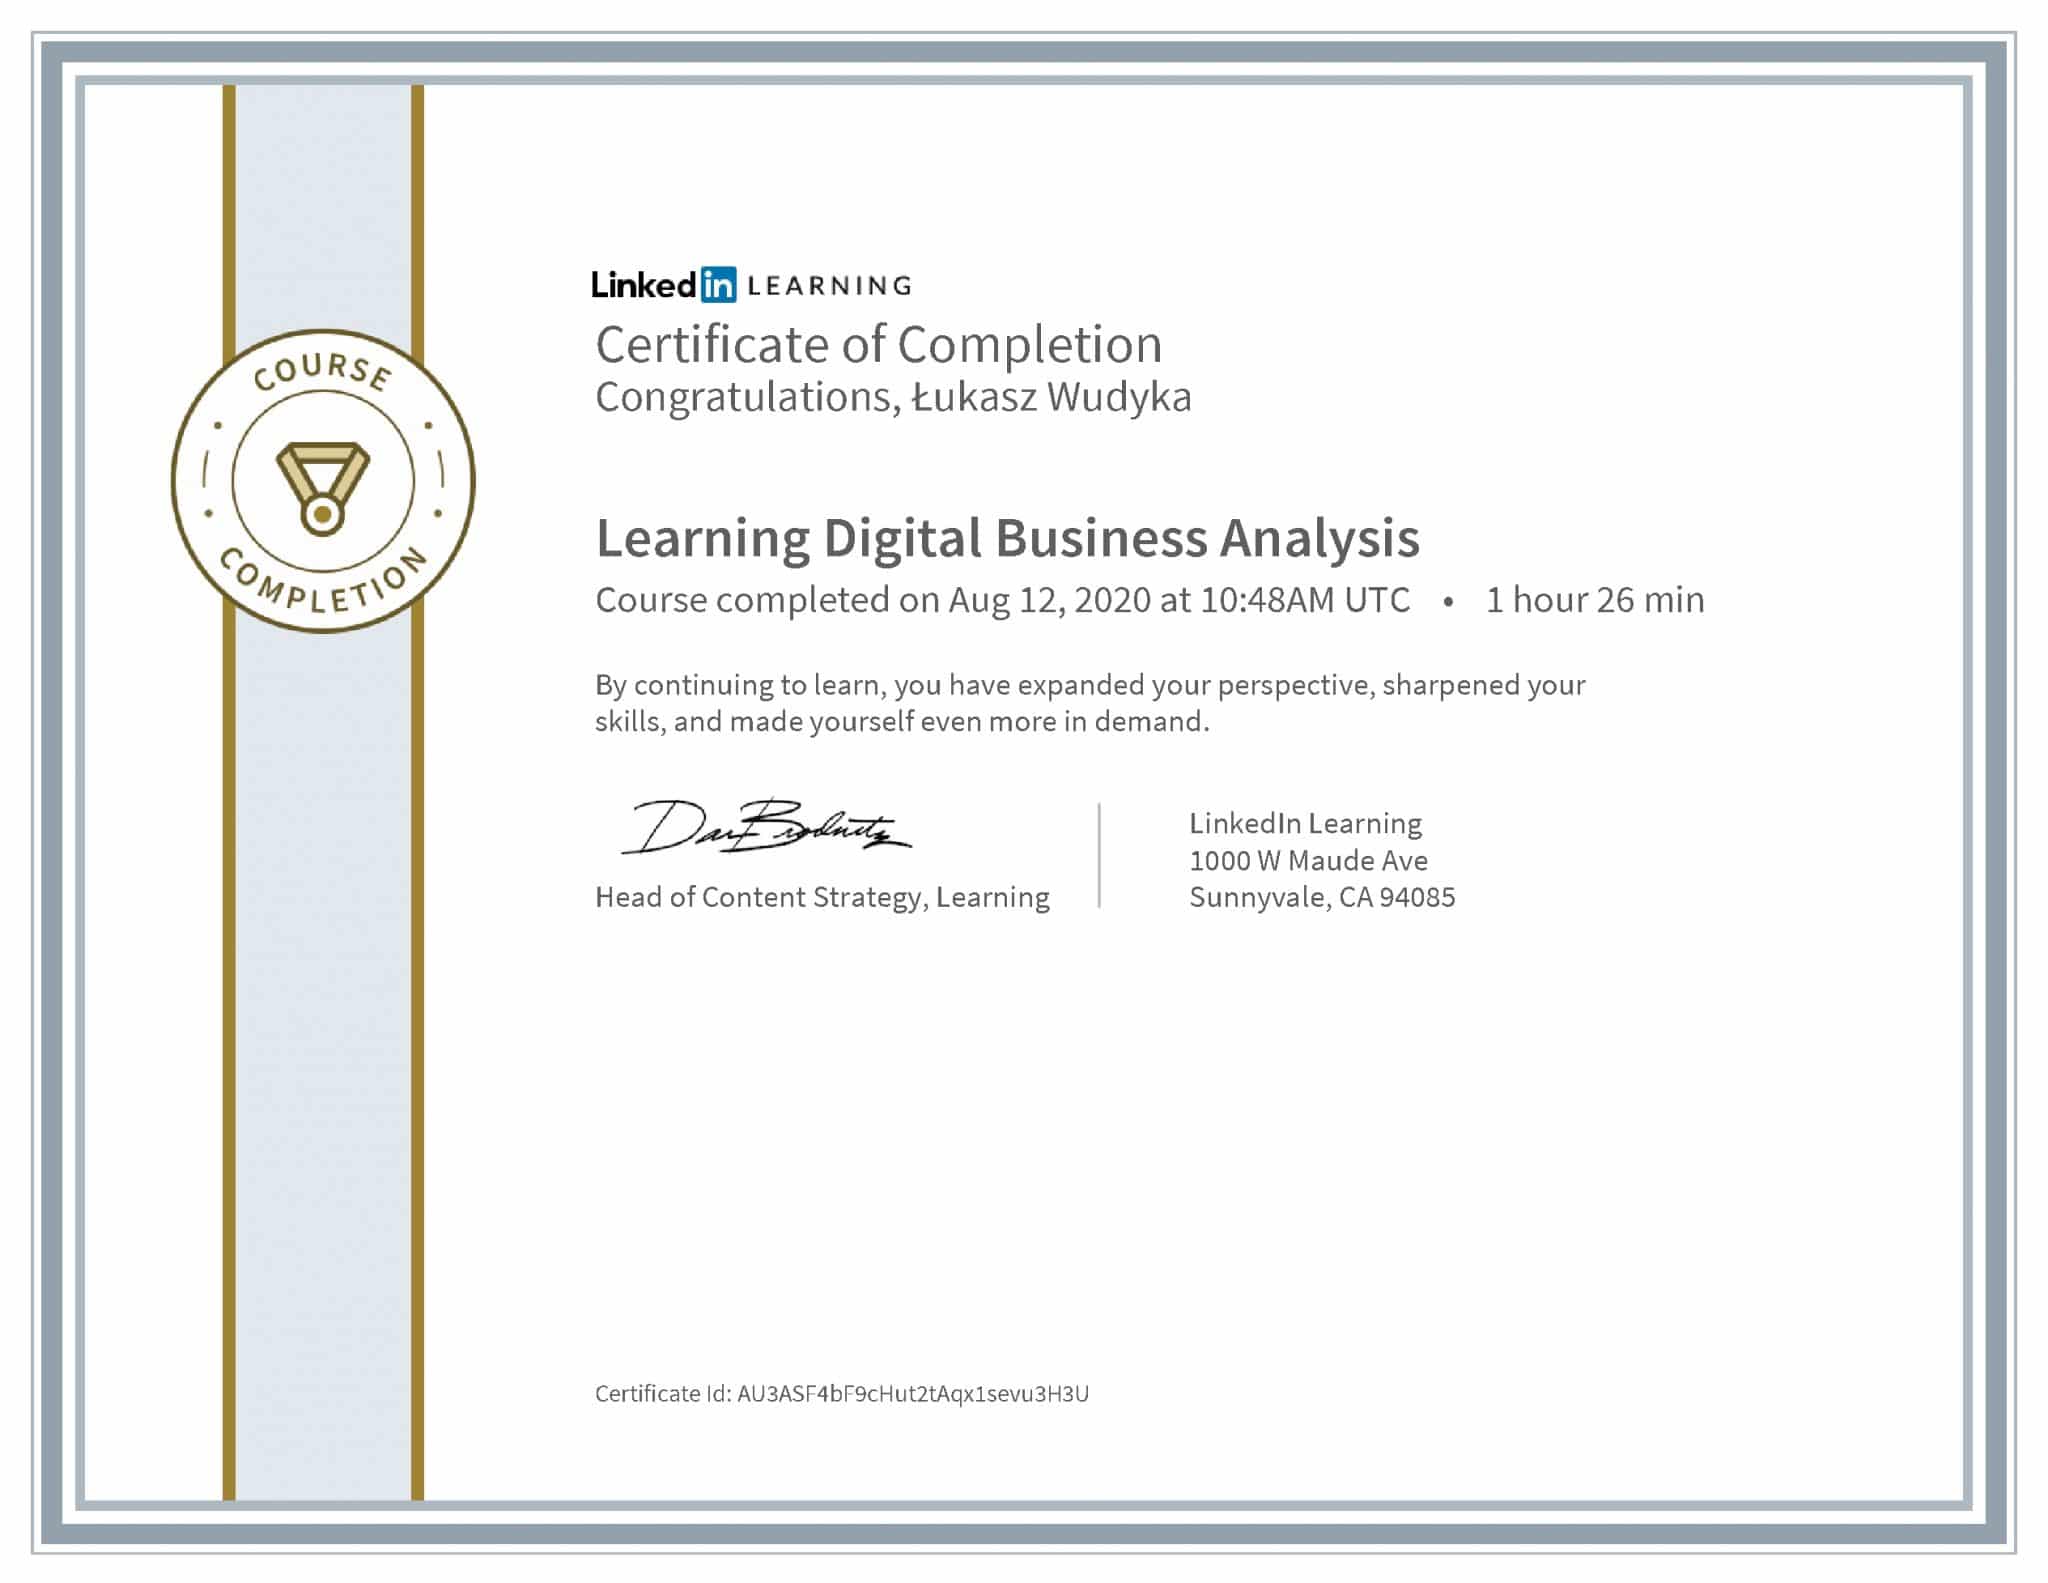 Łukasz Wudyka certyfikat LinkedIn Learning Digital Business Analysis